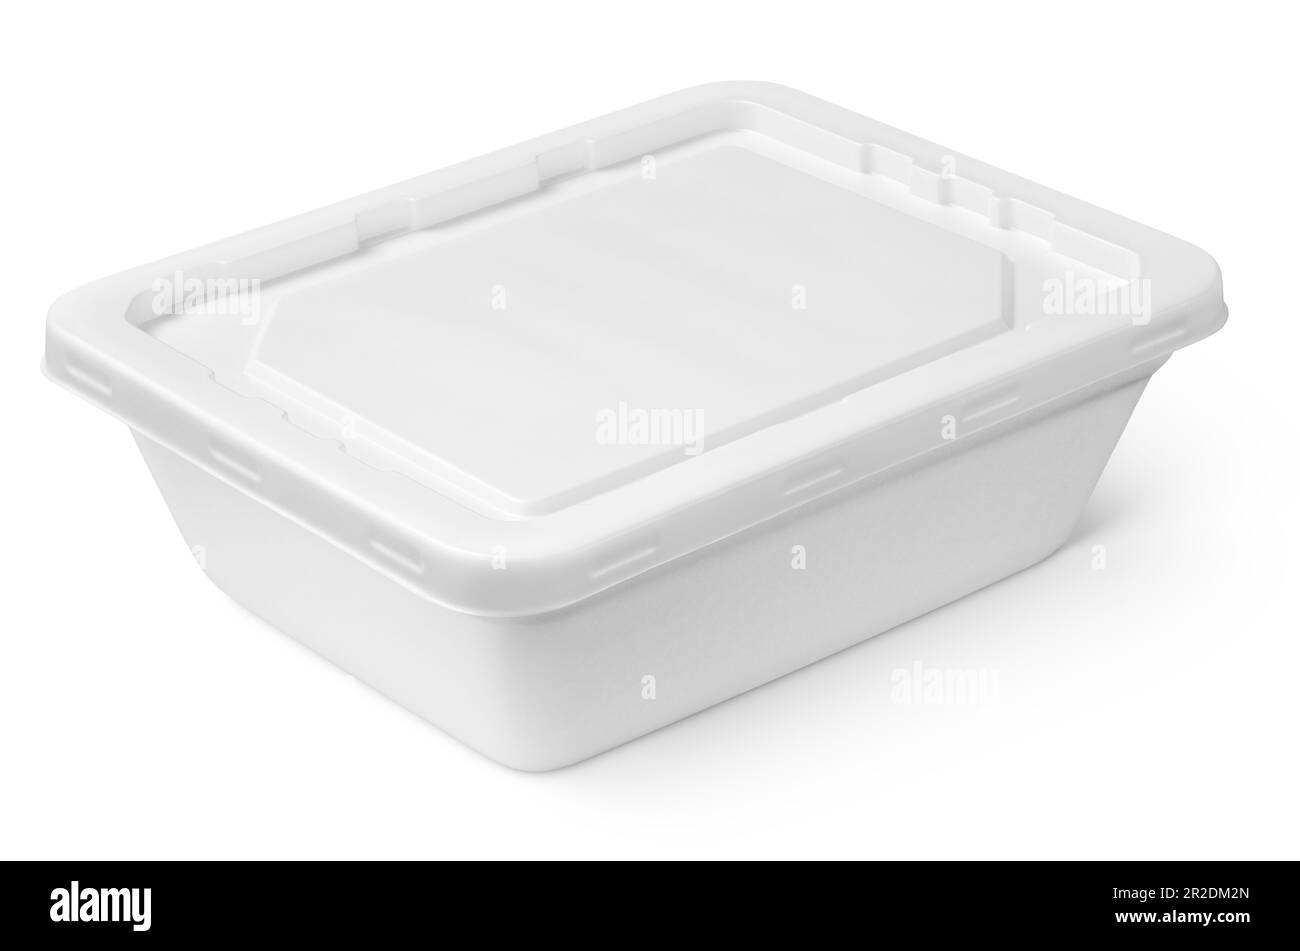 Contenitore per alimenti in polistirolo bianco chiuso con coperchio in plastica isolato su sfondo bianco con percorso di ritaglio Foto Stock